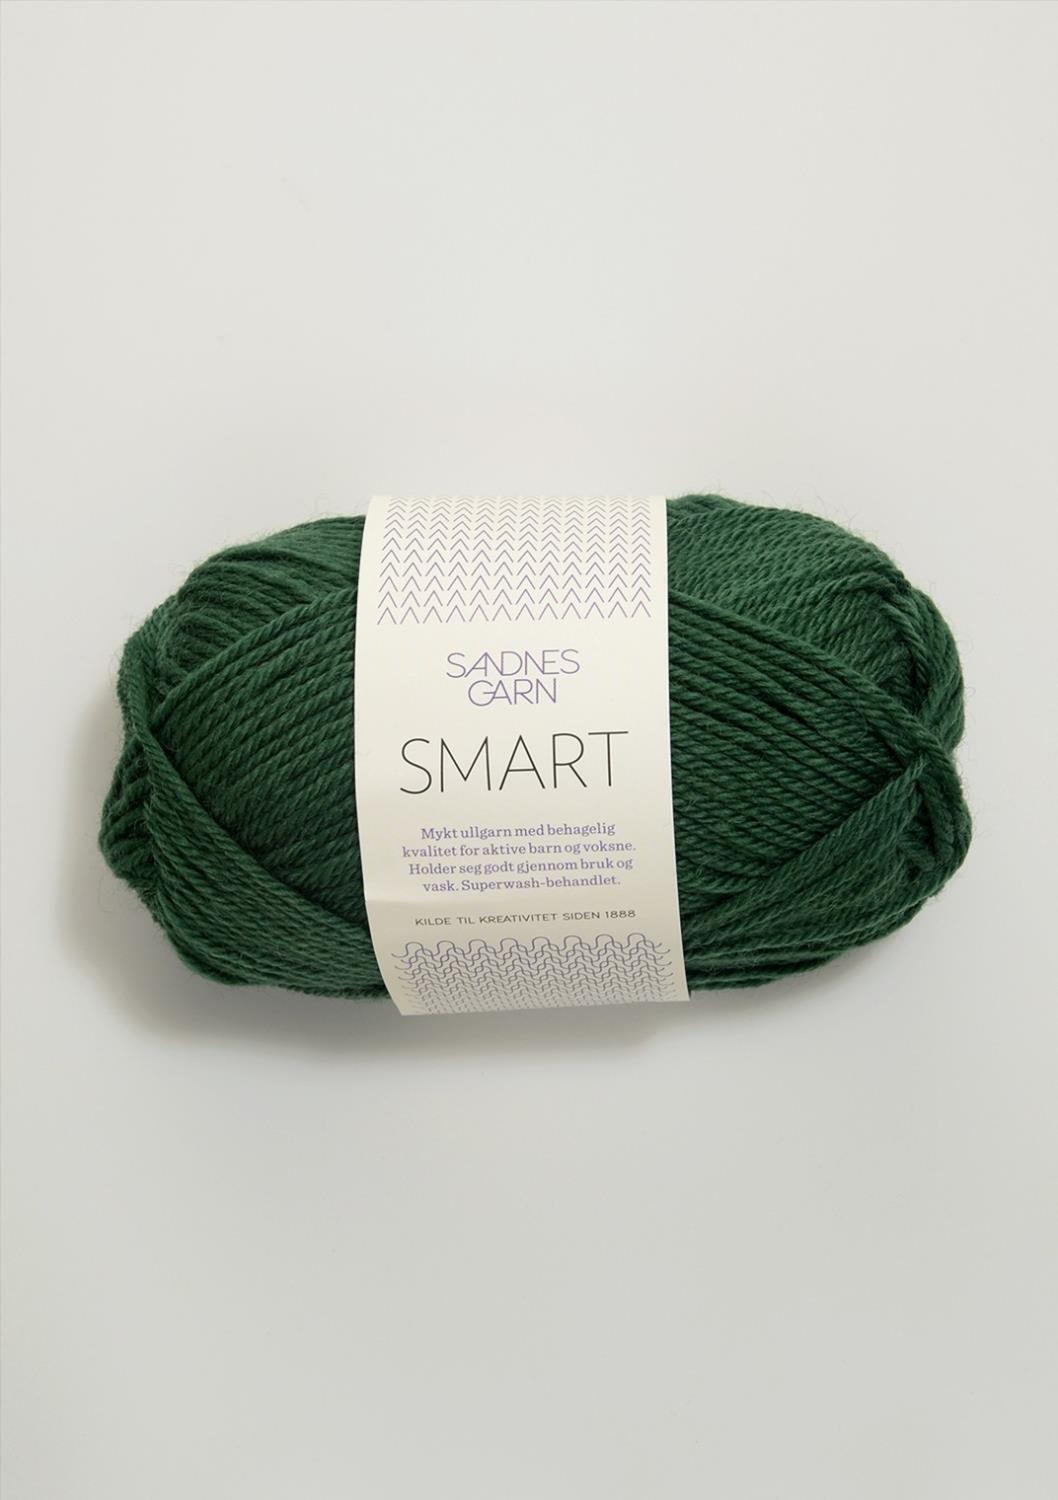 Smart Sandnes 8264 - Grønn